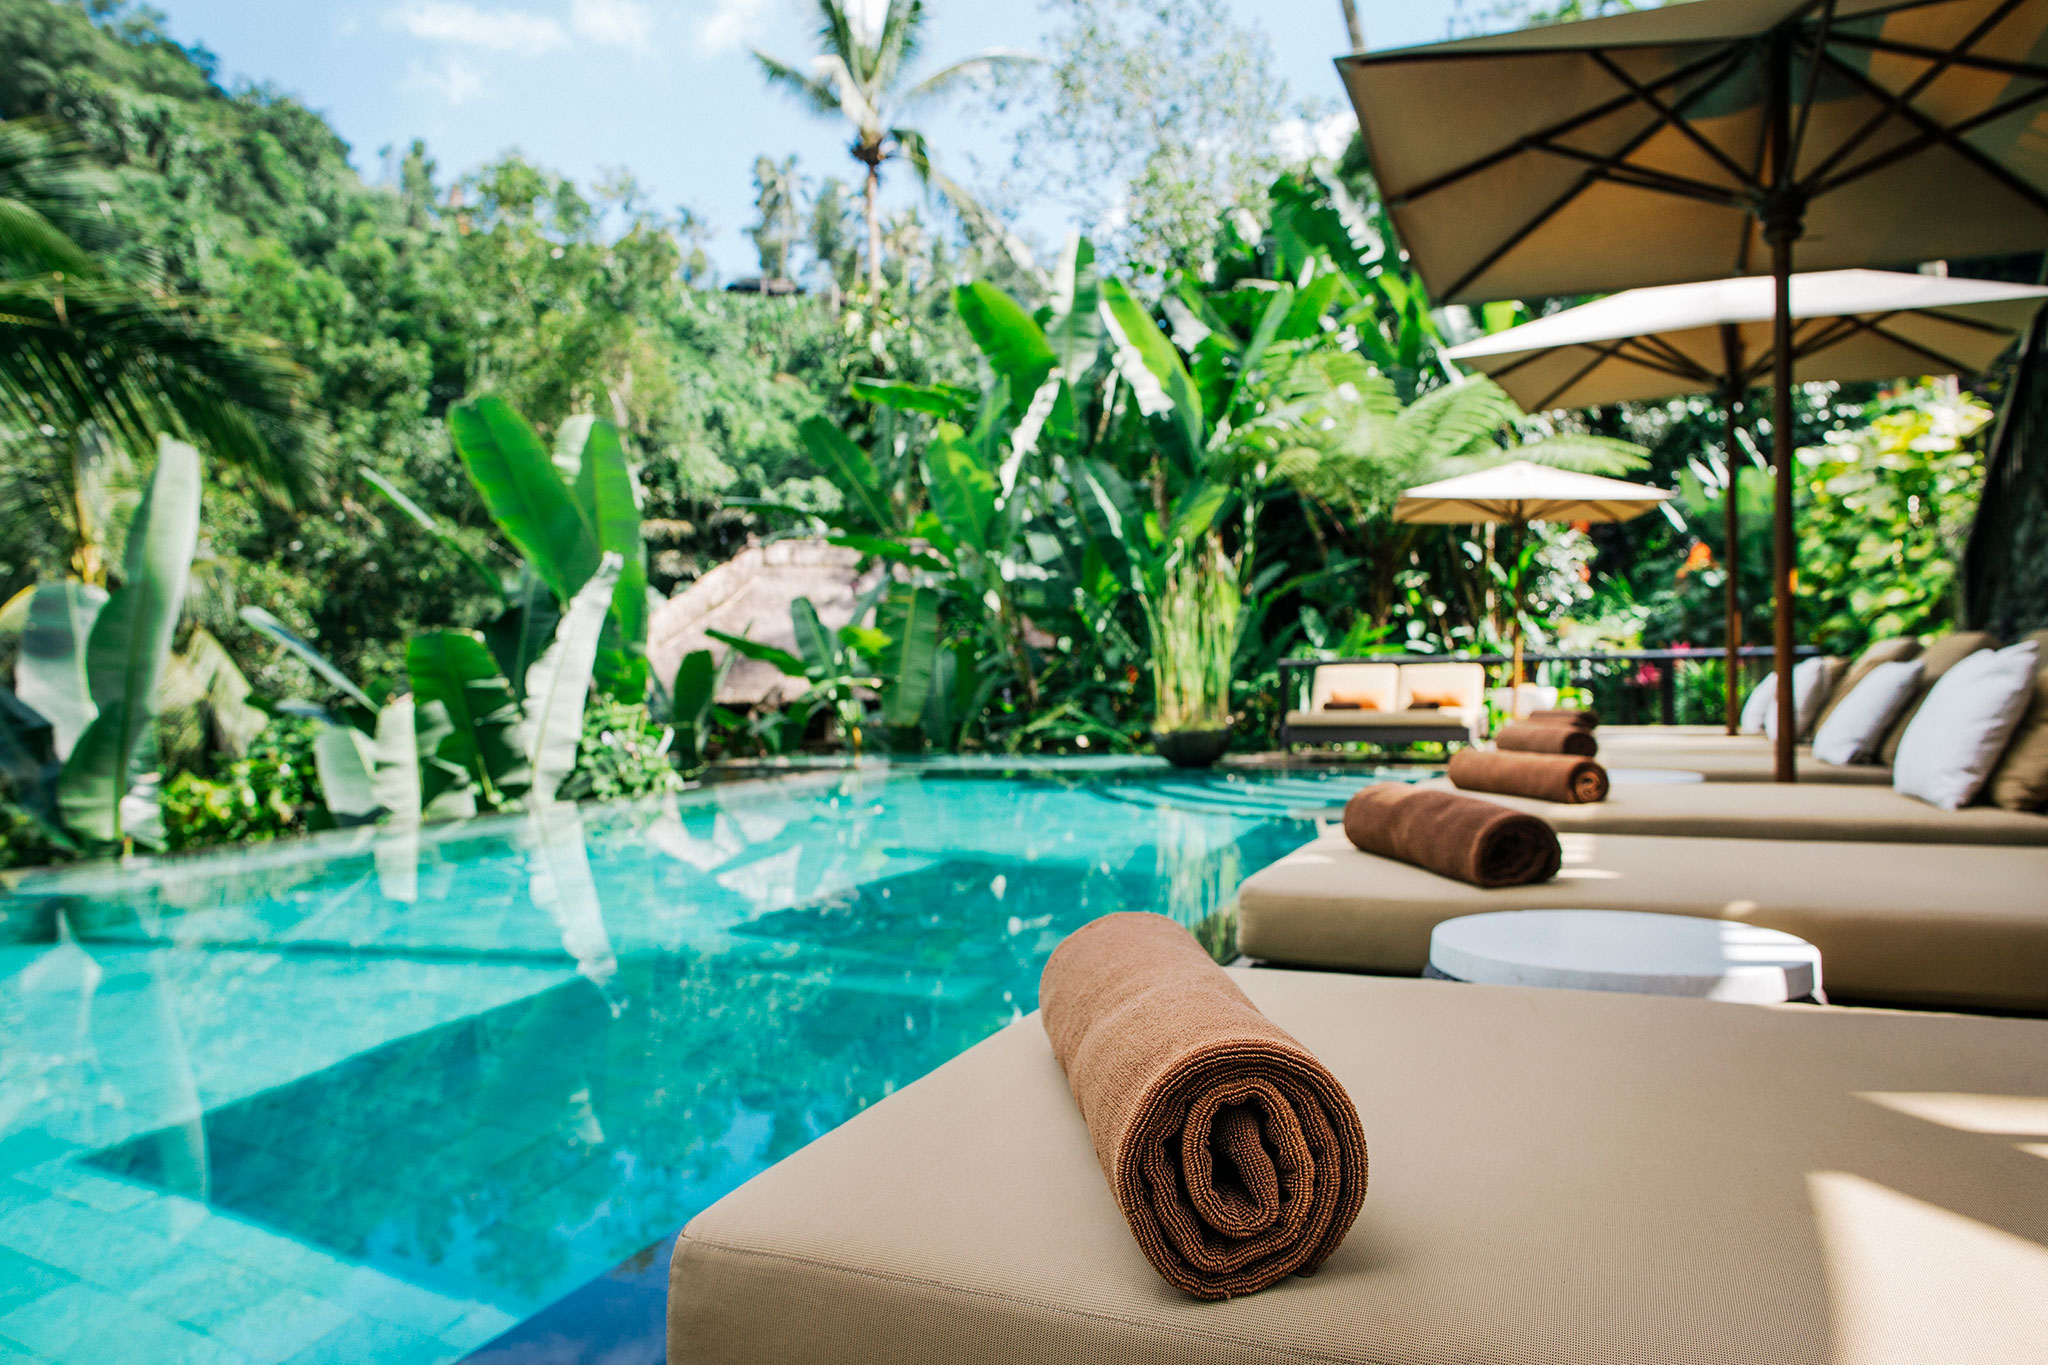 Toalhas limpas e macias em espreguiçadeiras aguardam os hóspedes ao lado de uma piscina tropical.